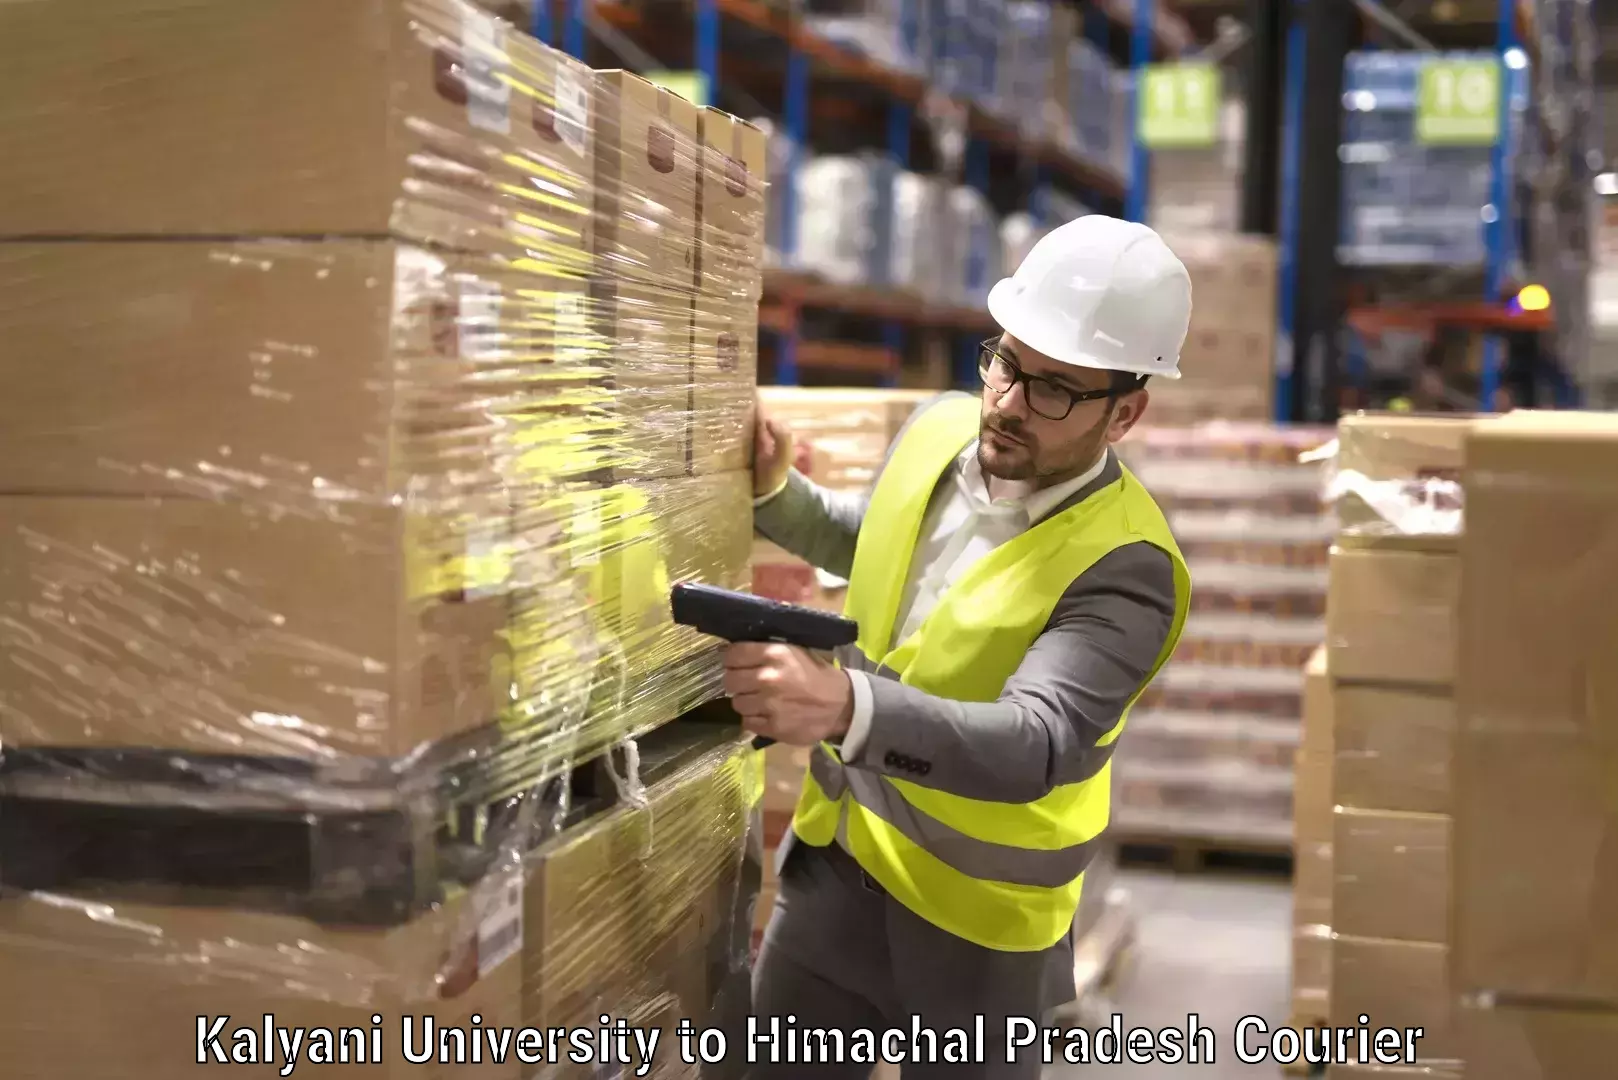 Furniture shipping services in Kalyani University to Himachal Pradesh